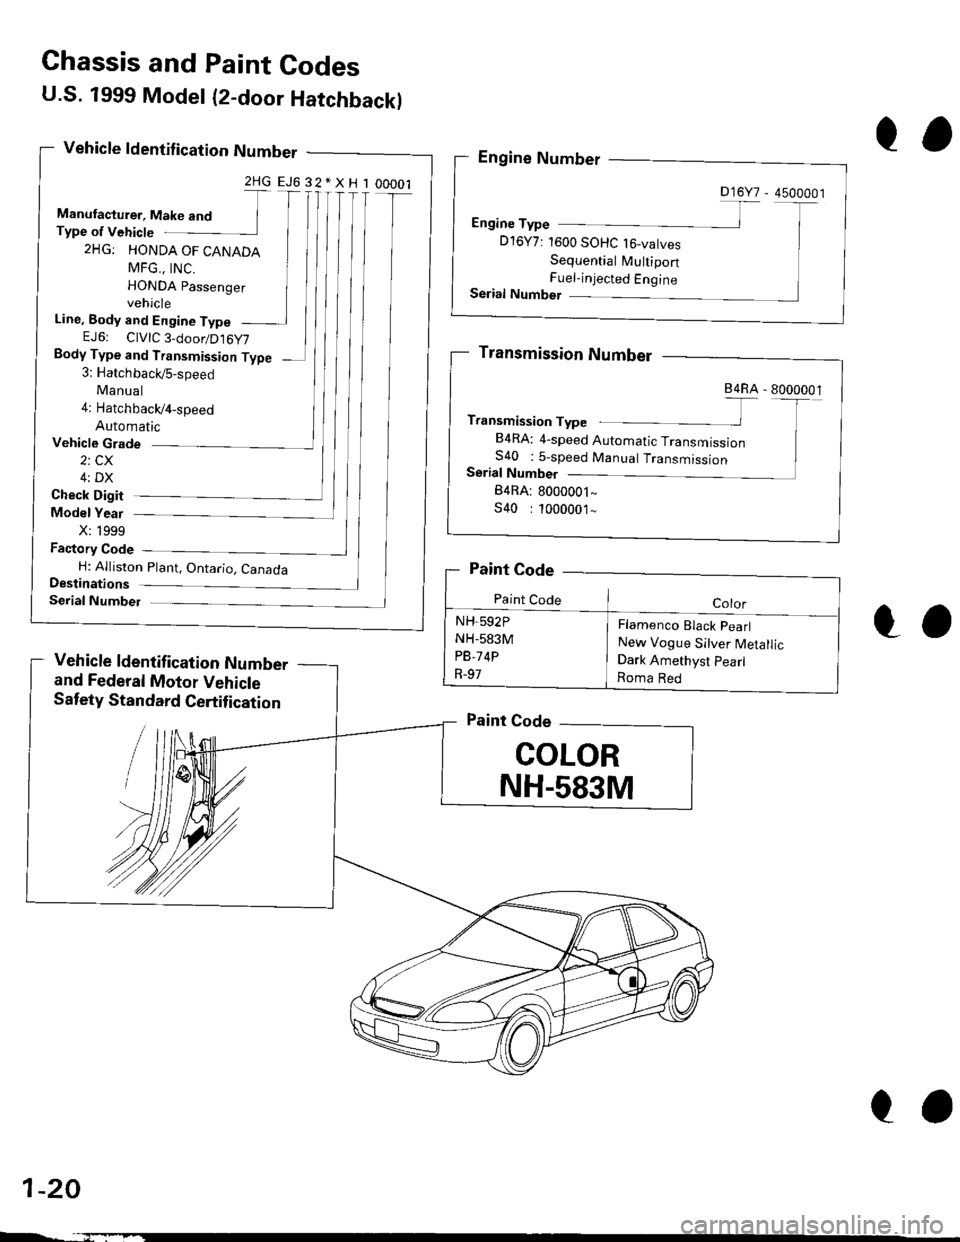 HONDA CIVIC 1999 6.G User Guide U.S. 1999 Model (2-door Hatchbackl
Vehicle ldentif ication Number
2HGEJ632*XH100001
Manufacturer, Make and TType of Vehicte
2HG: HONDA OF CANADA
MFG.. tNC. IHONDA passenger Ivehicle
Line, Body and Eng